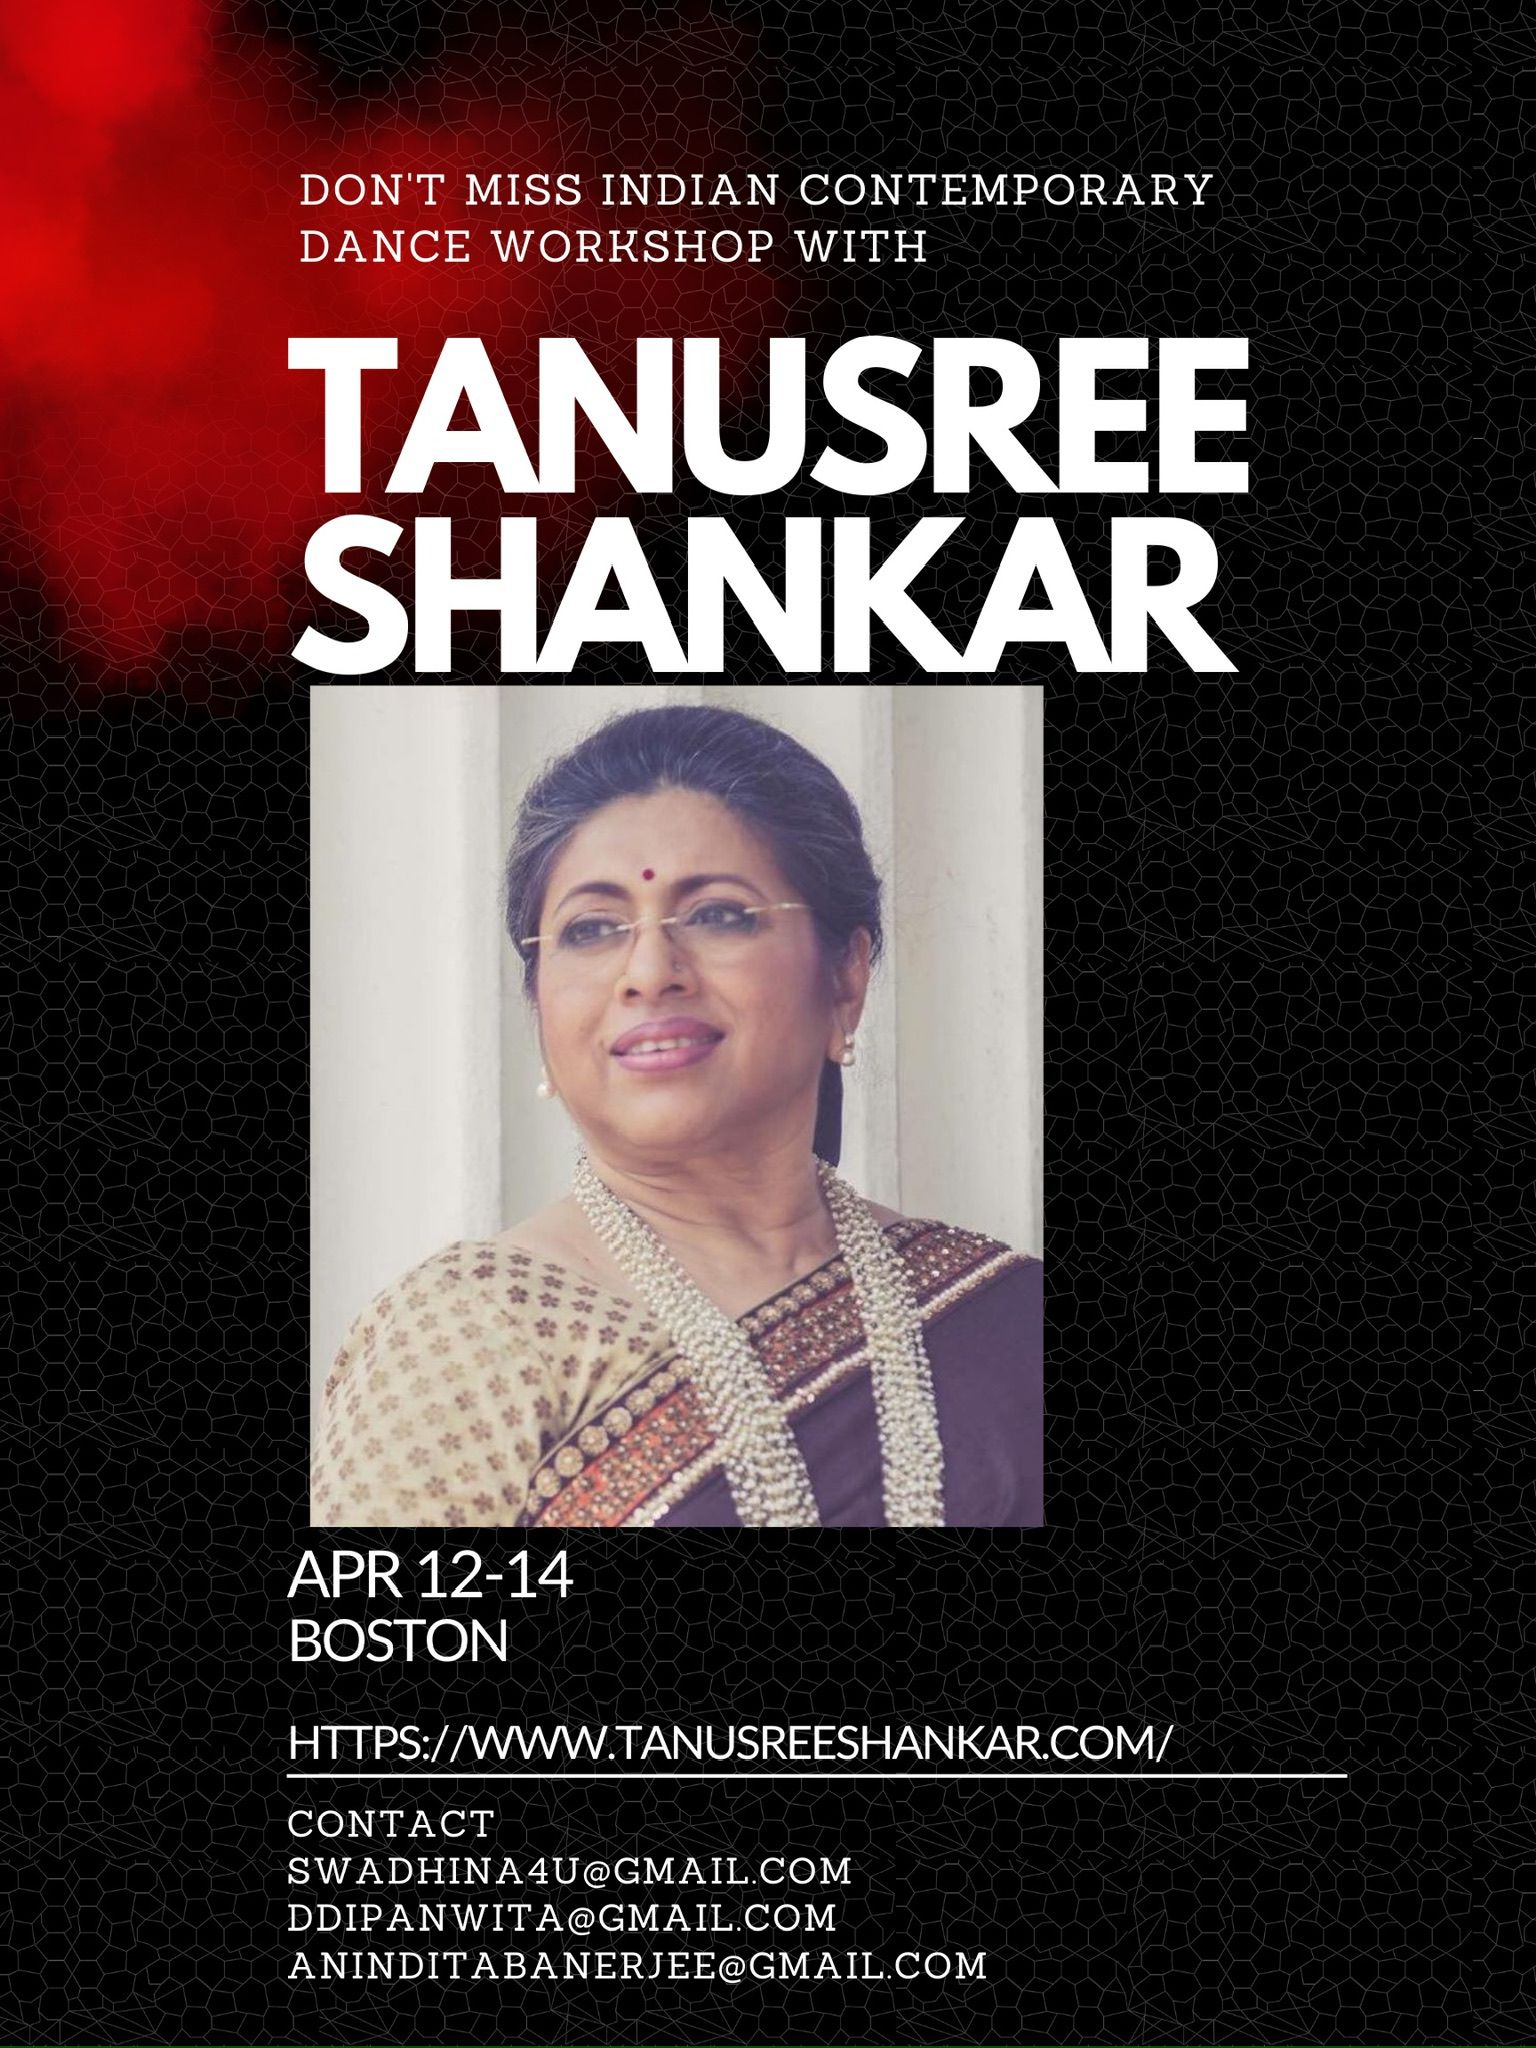 Workshop with Tanusree Shankar